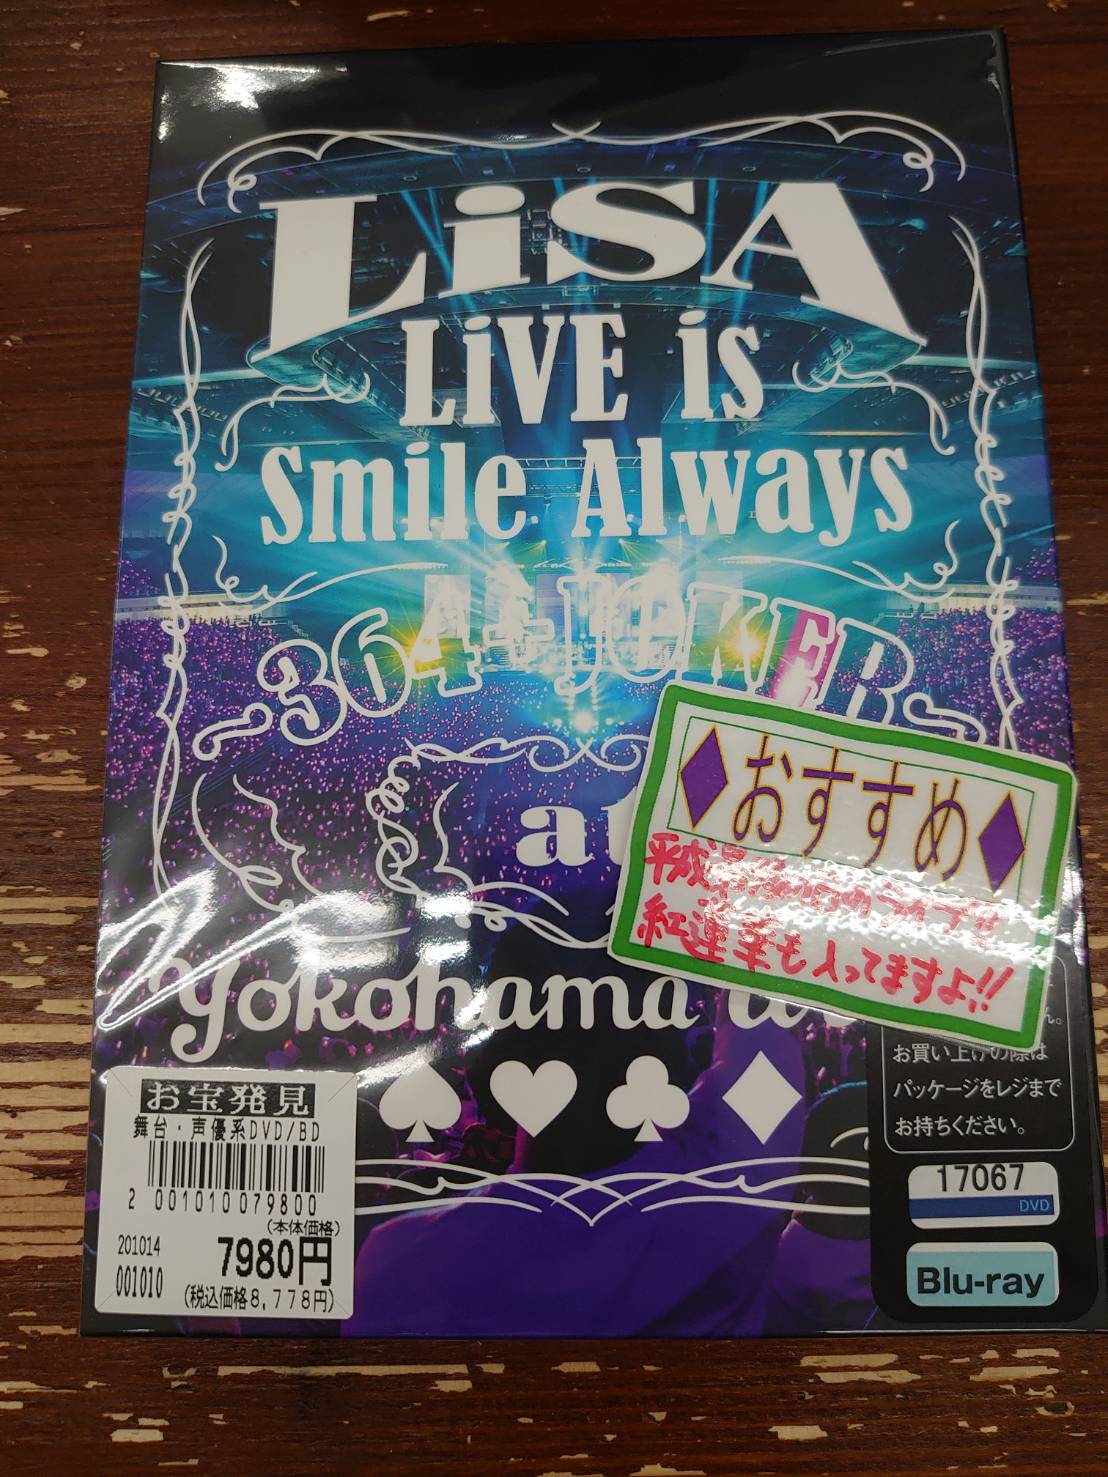 10 15 買取商品のご紹介です Lisa ライブ Blu Ray 滝沢歌舞伎zero Snowmanカレンダー マンガ倉庫 富山店